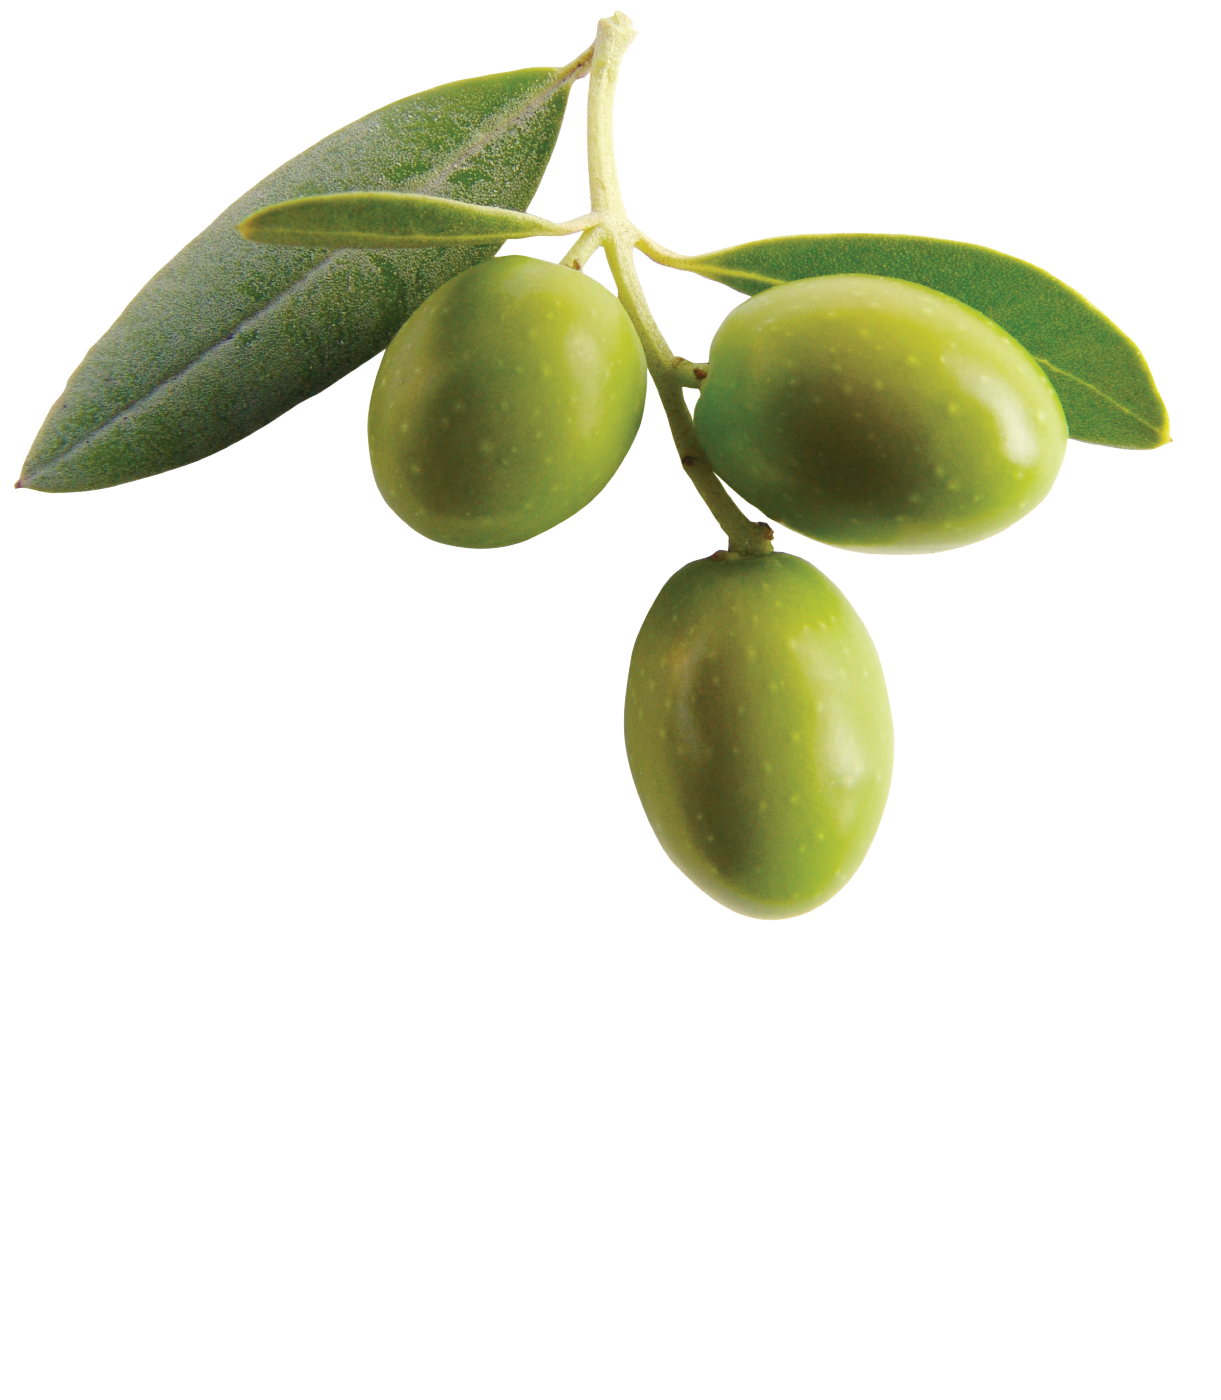 Olives image PNG image